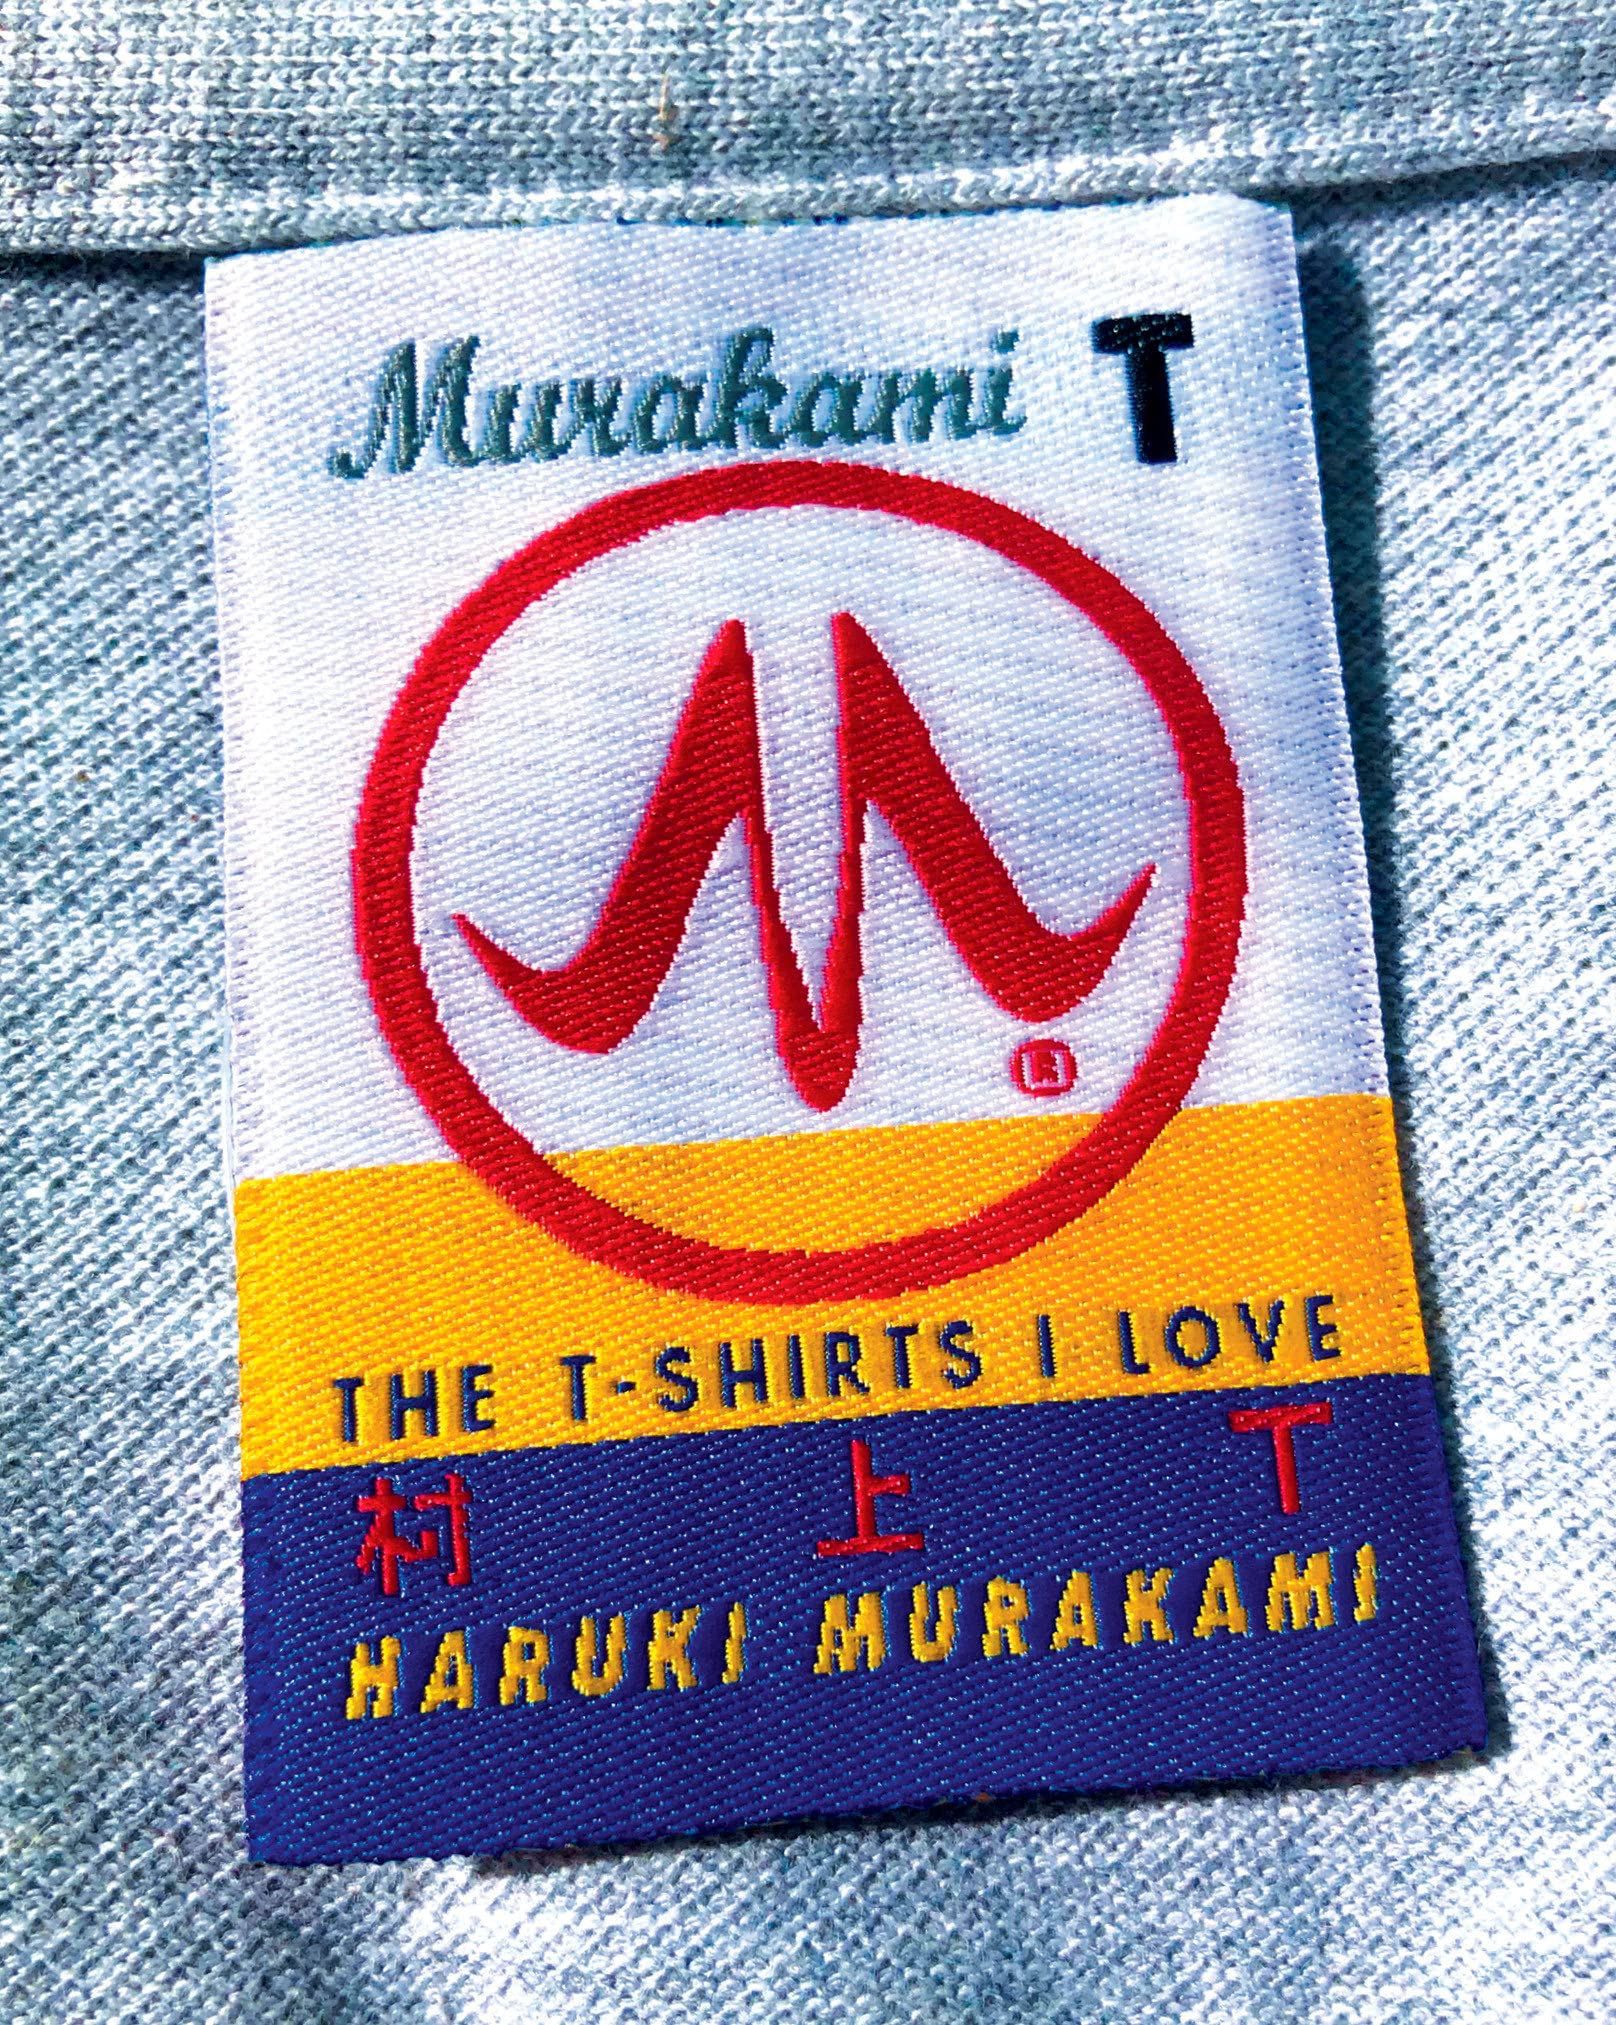 Murakami T: The T-Shirts I Love Hardcover by Haruki Murakami